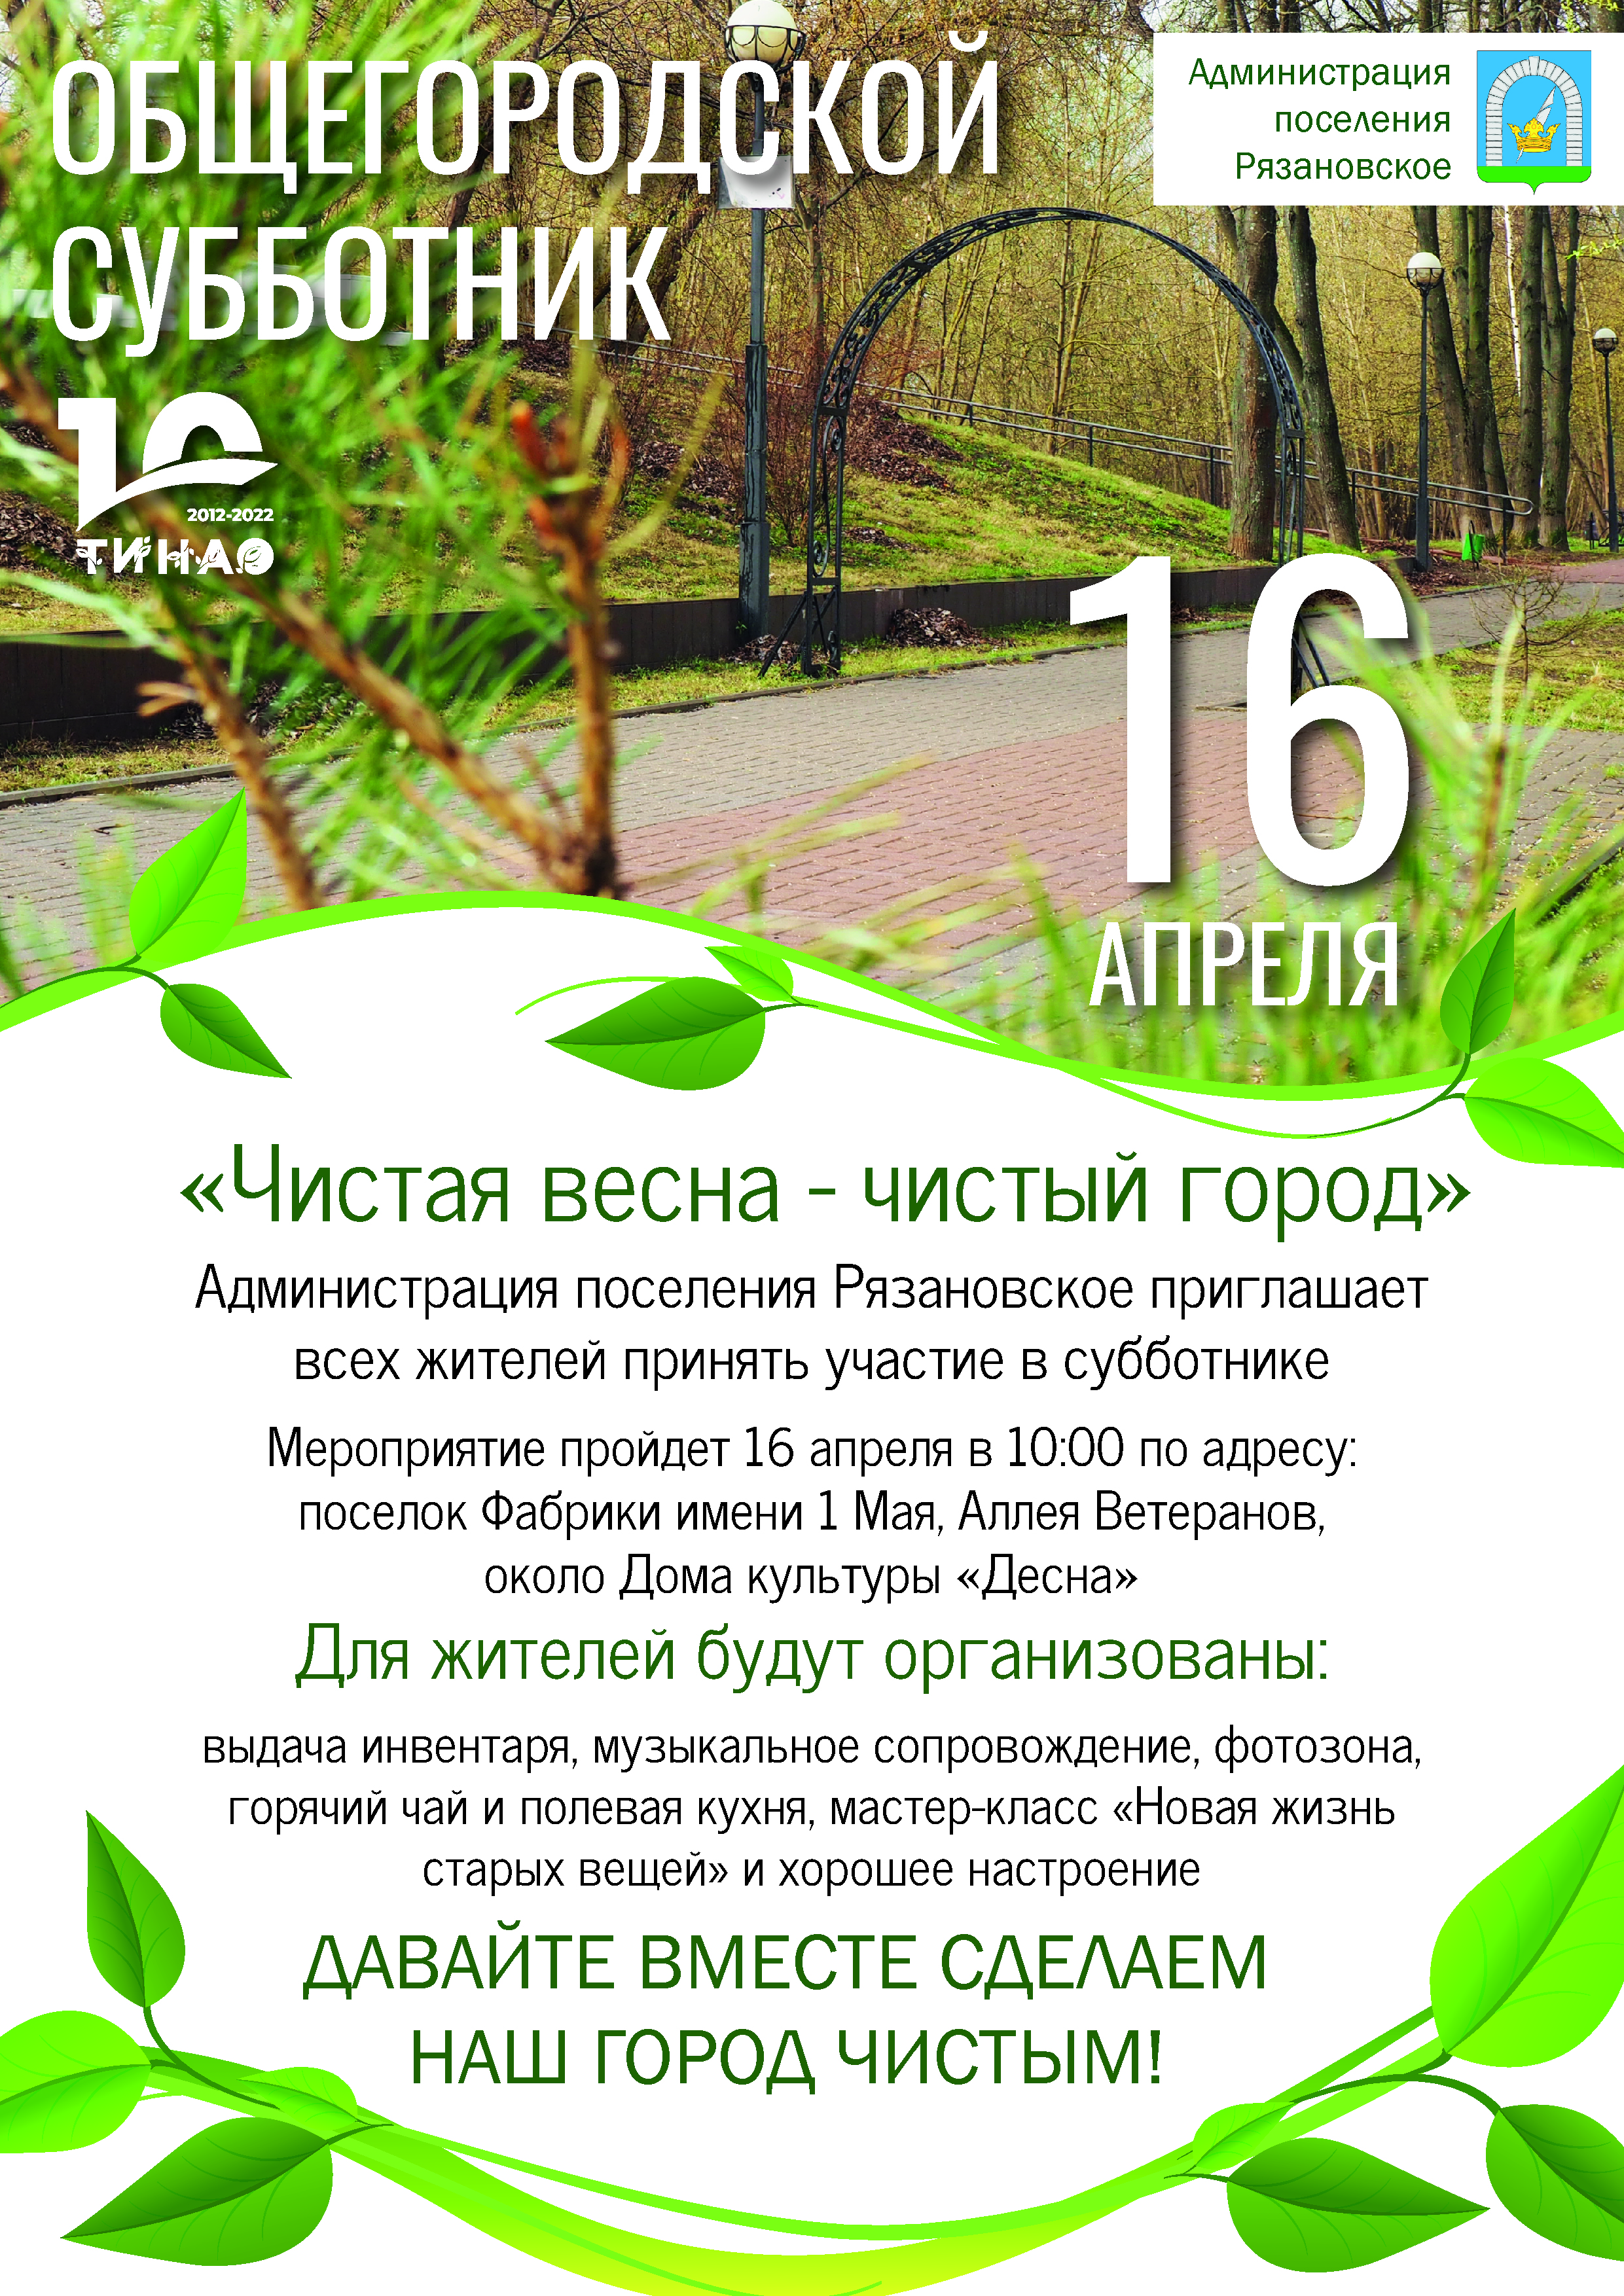 В поселении Рязановское 16 апреля пройдет общегородской субботник